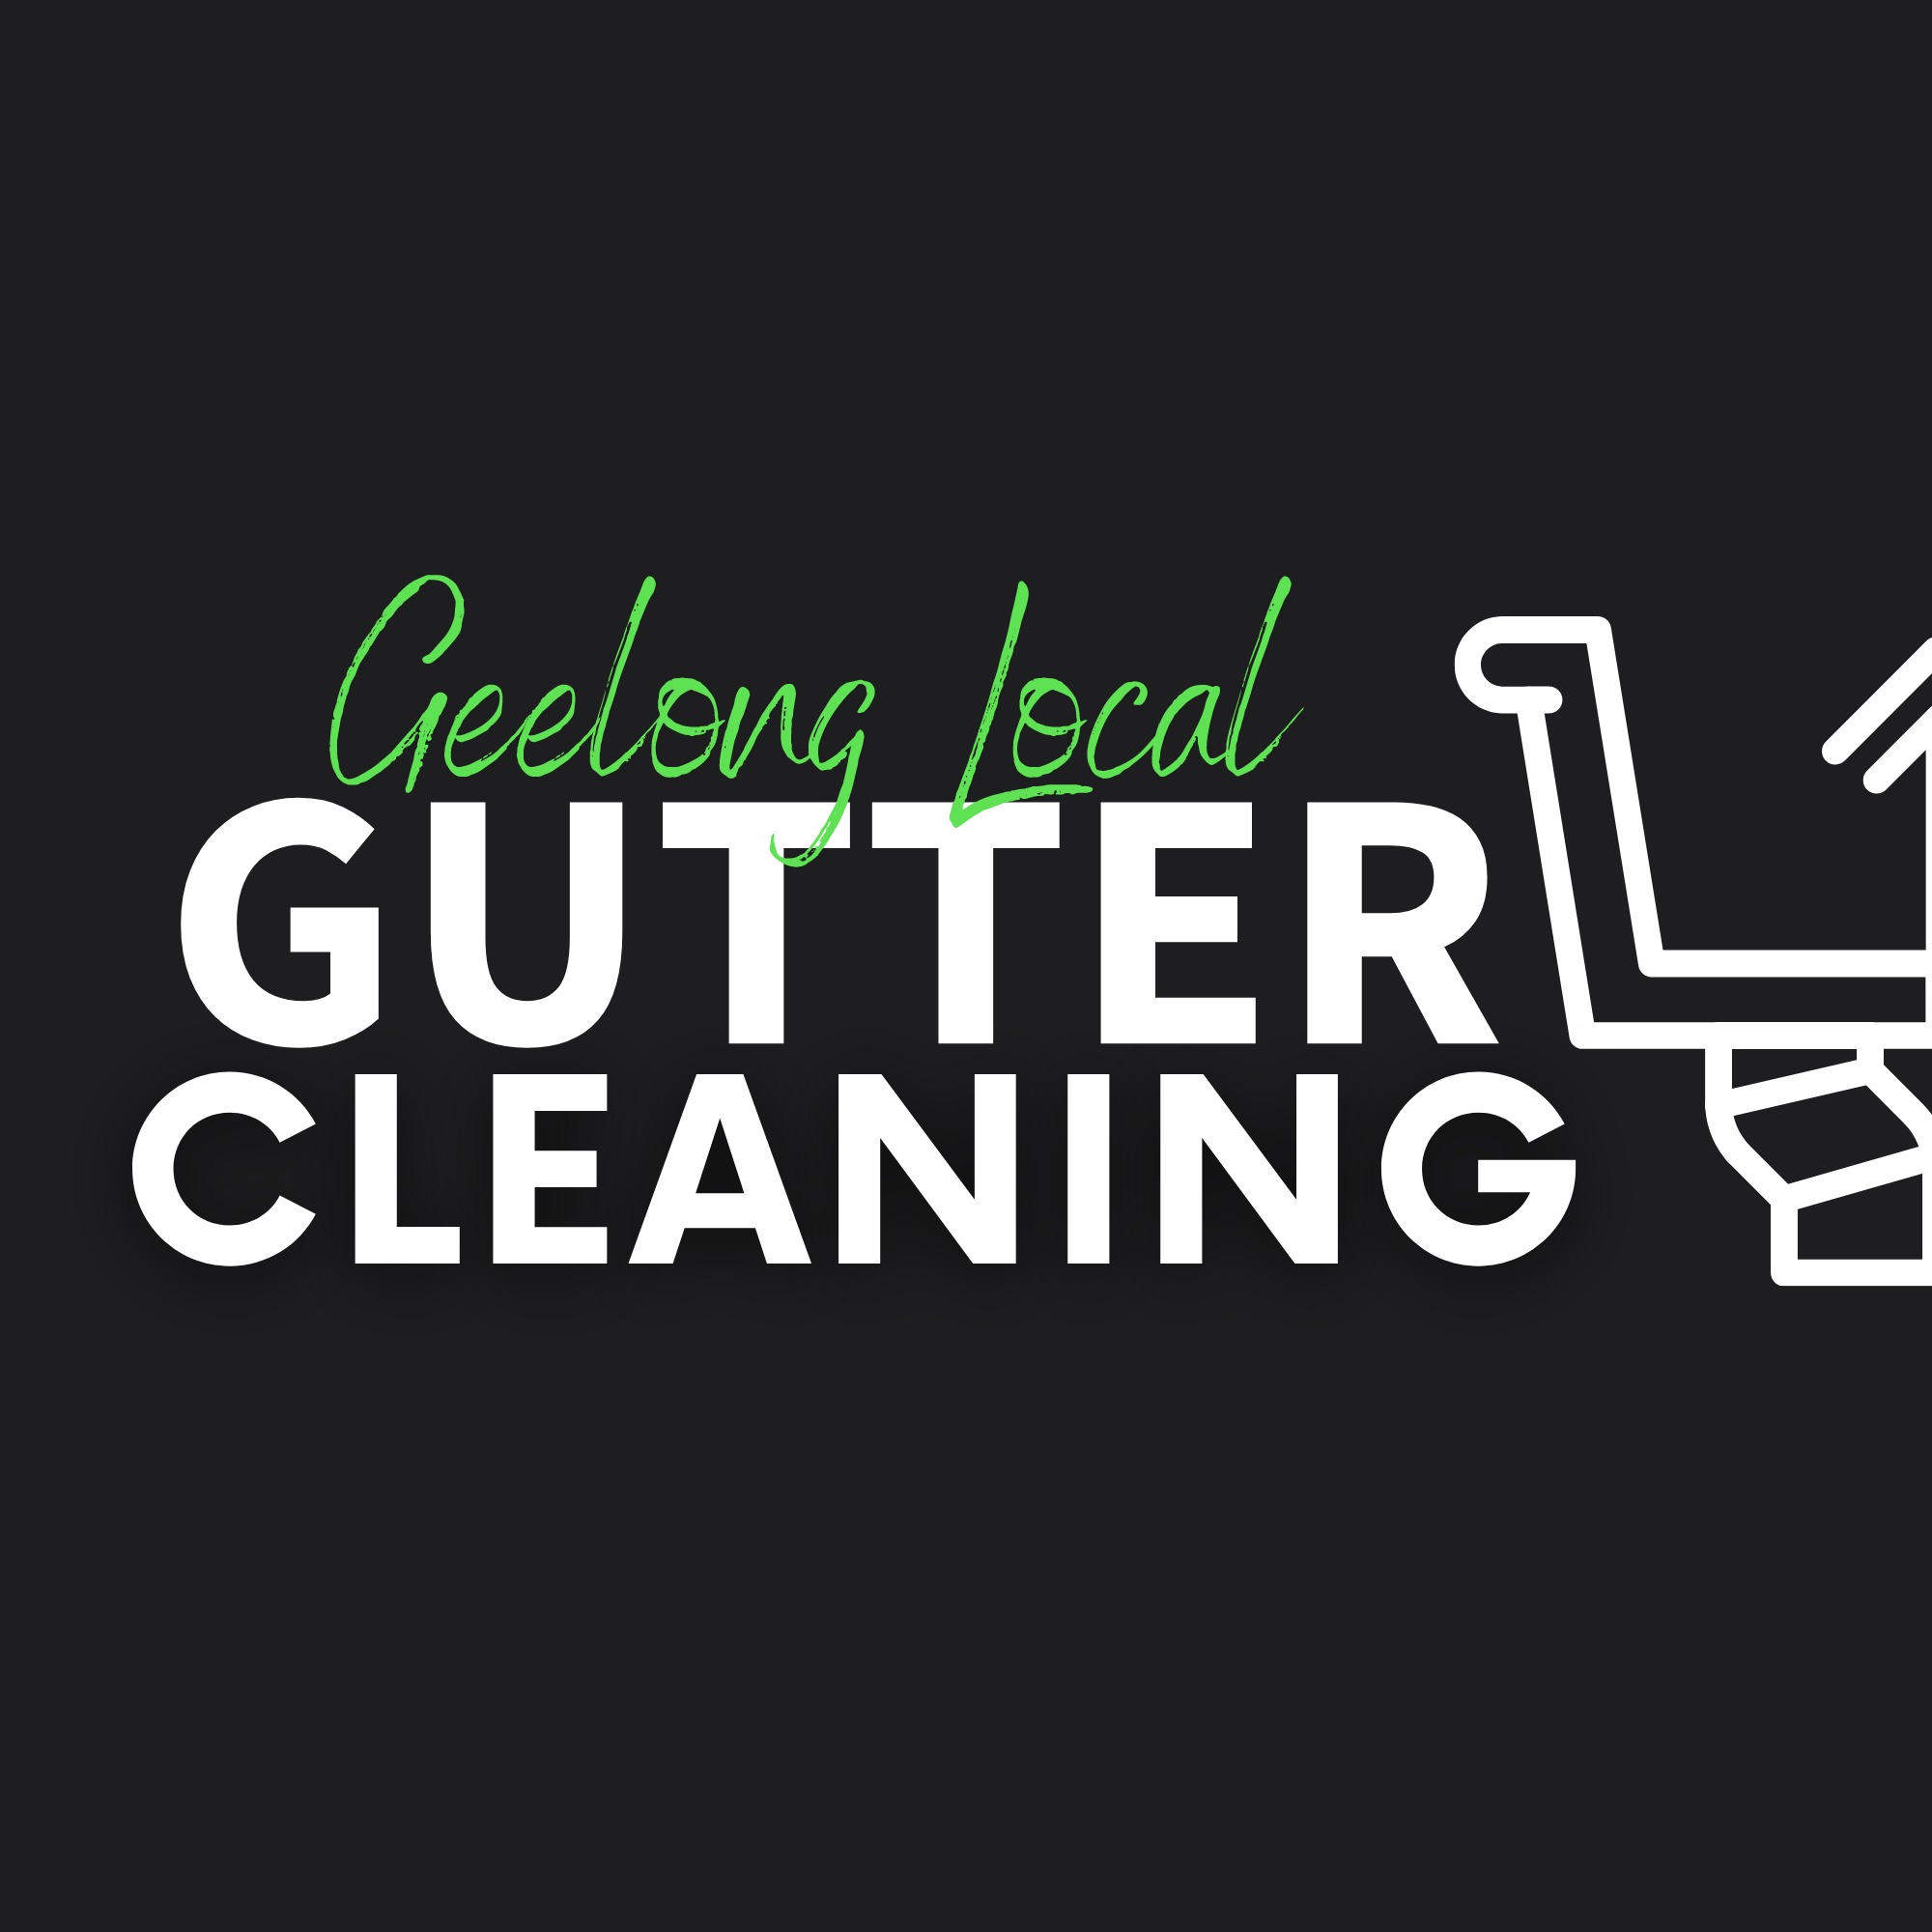 Geelong Local Gutter Cleaning Logo